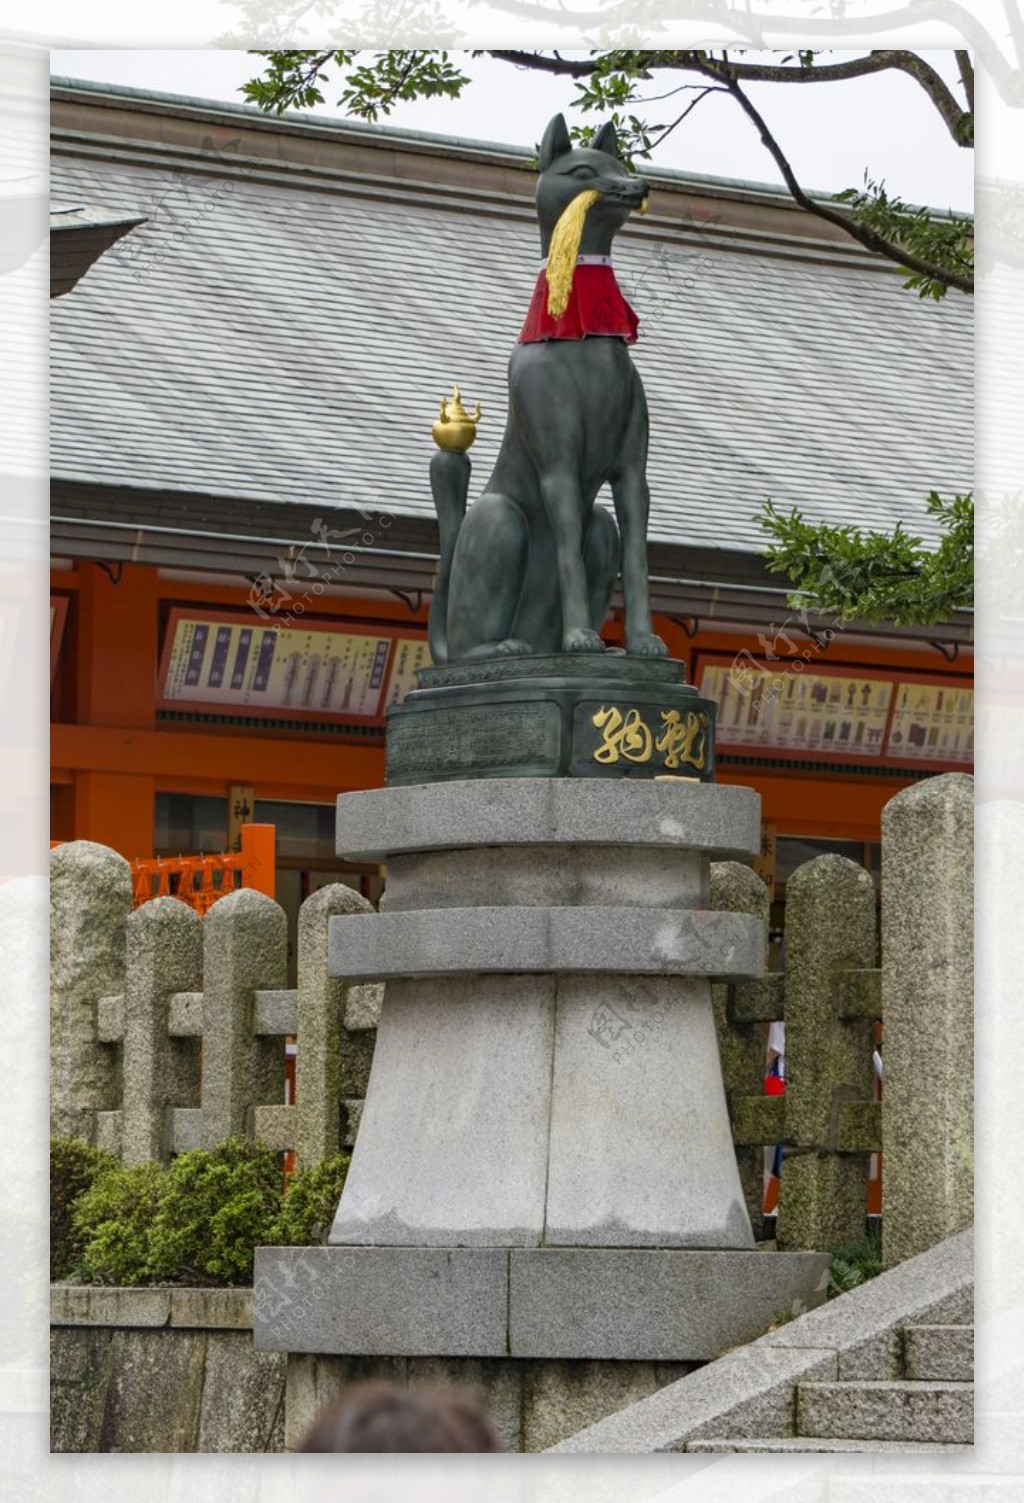 日本稻荷神狐狸雕塑